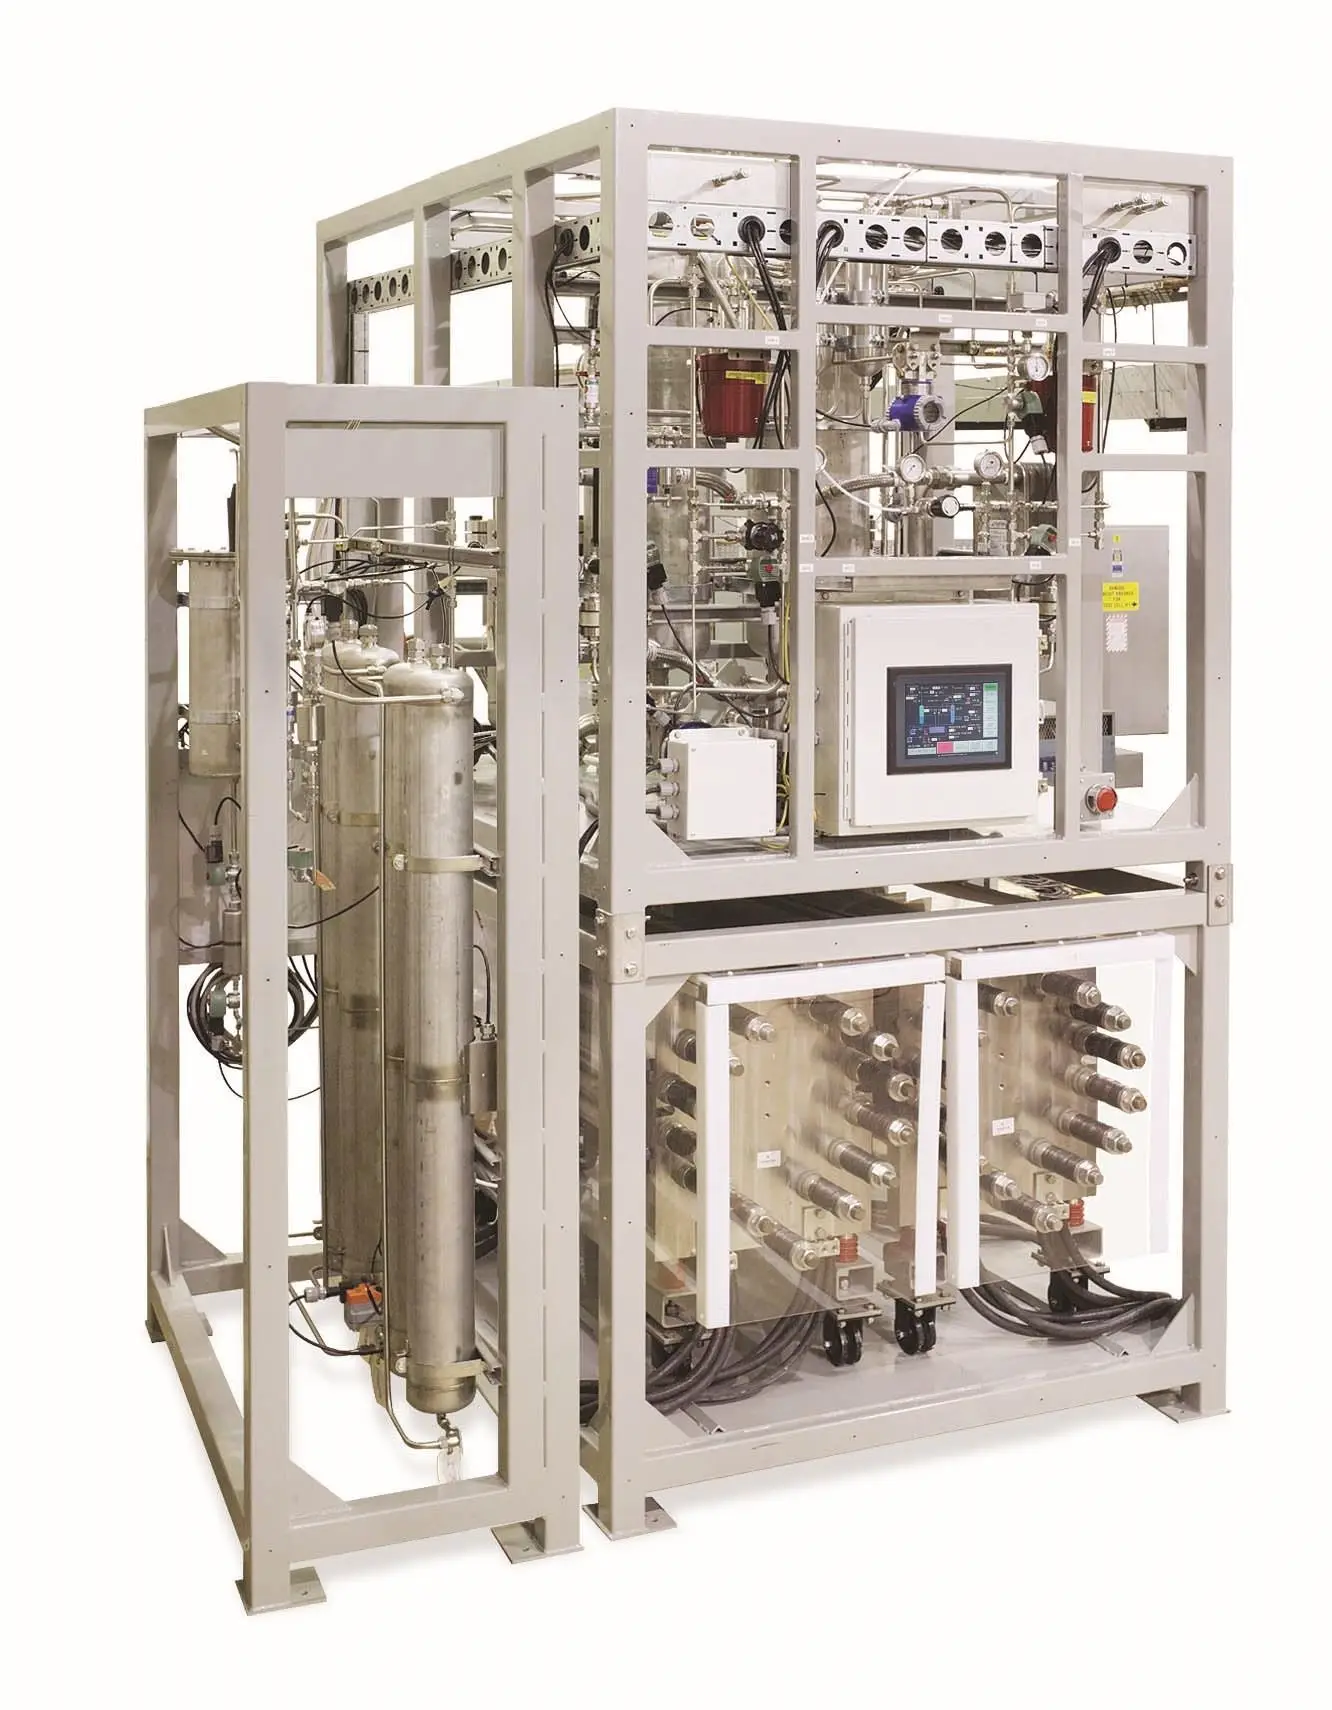 Fabrika fiyat yüksek doğruluk 380-400V/50-60Hz hidrojen üreten sistem tesisi satılık